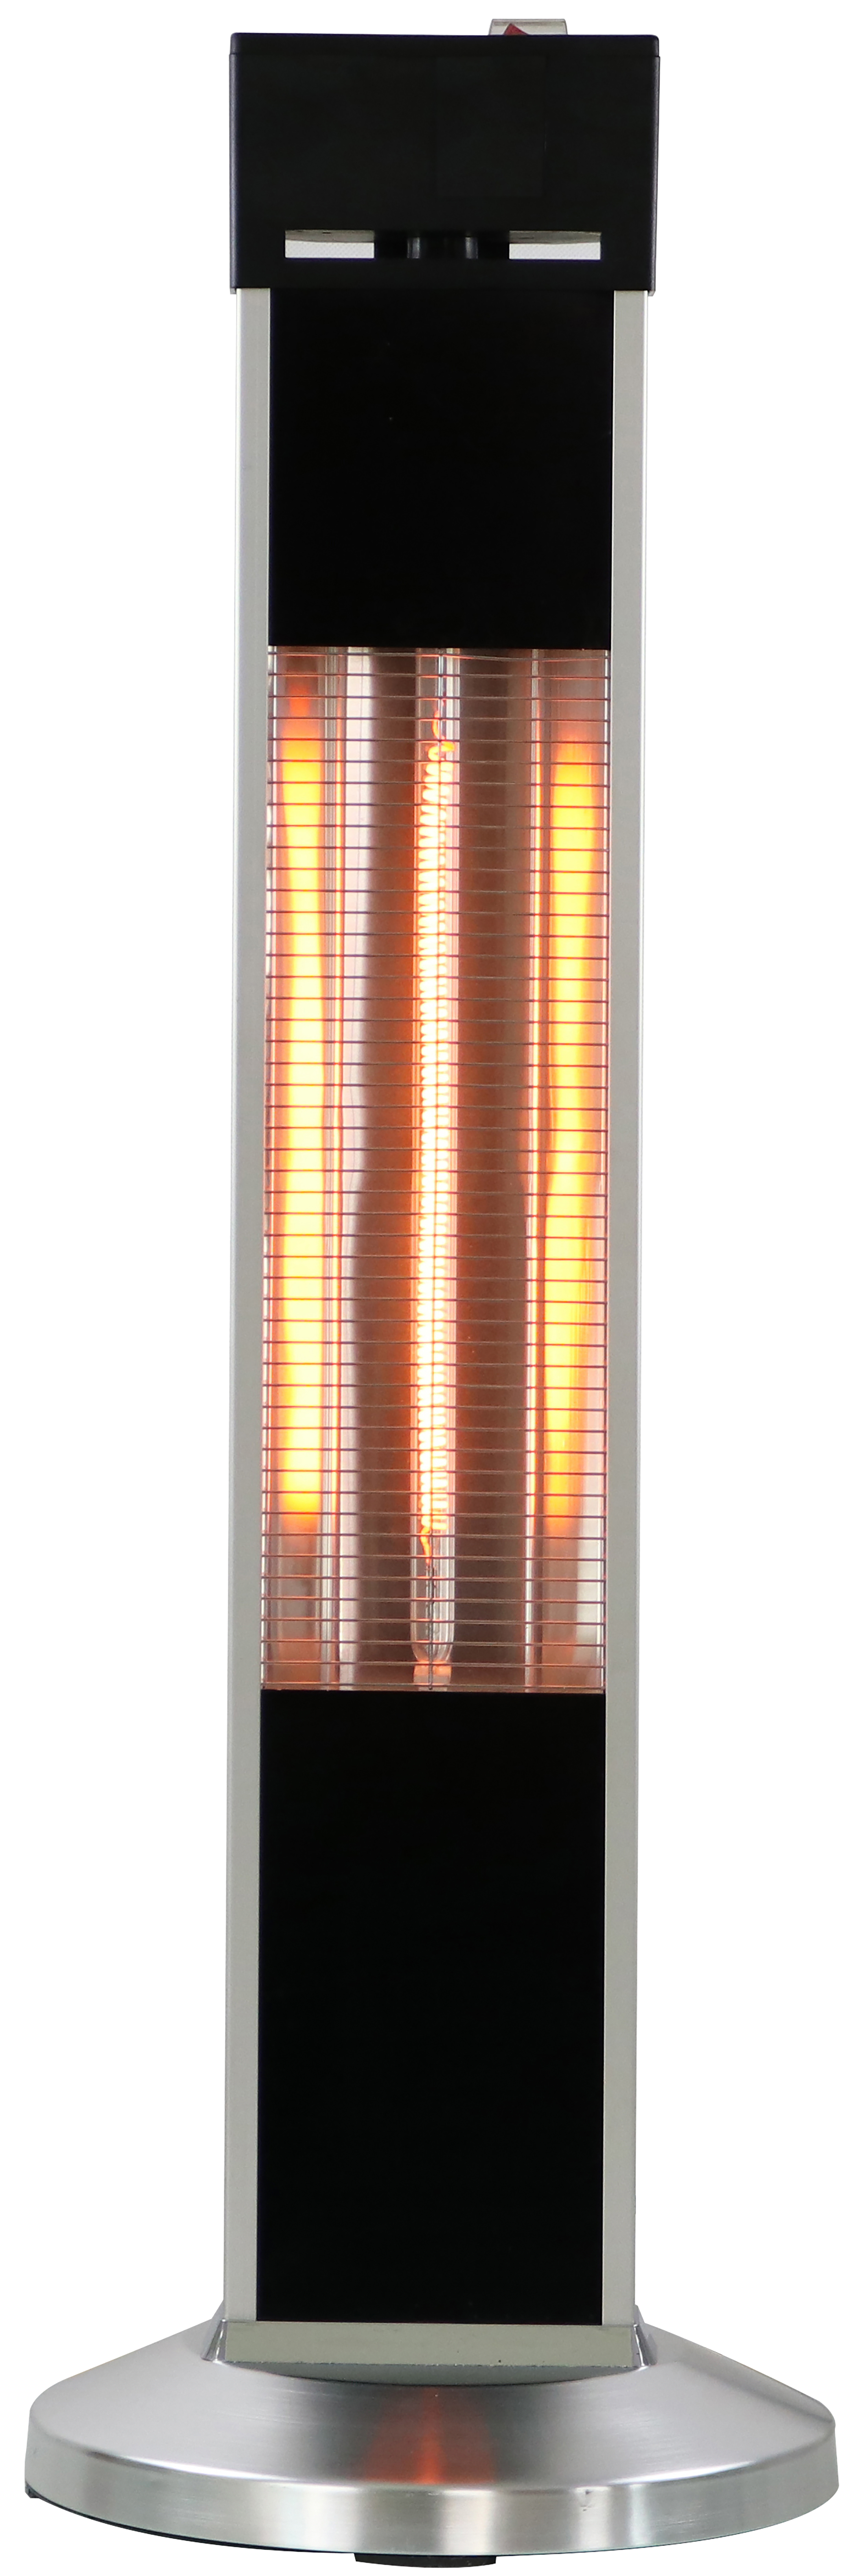 Home It - Infrared Patio Heater Floor Standing - Hage, altan og utendørs